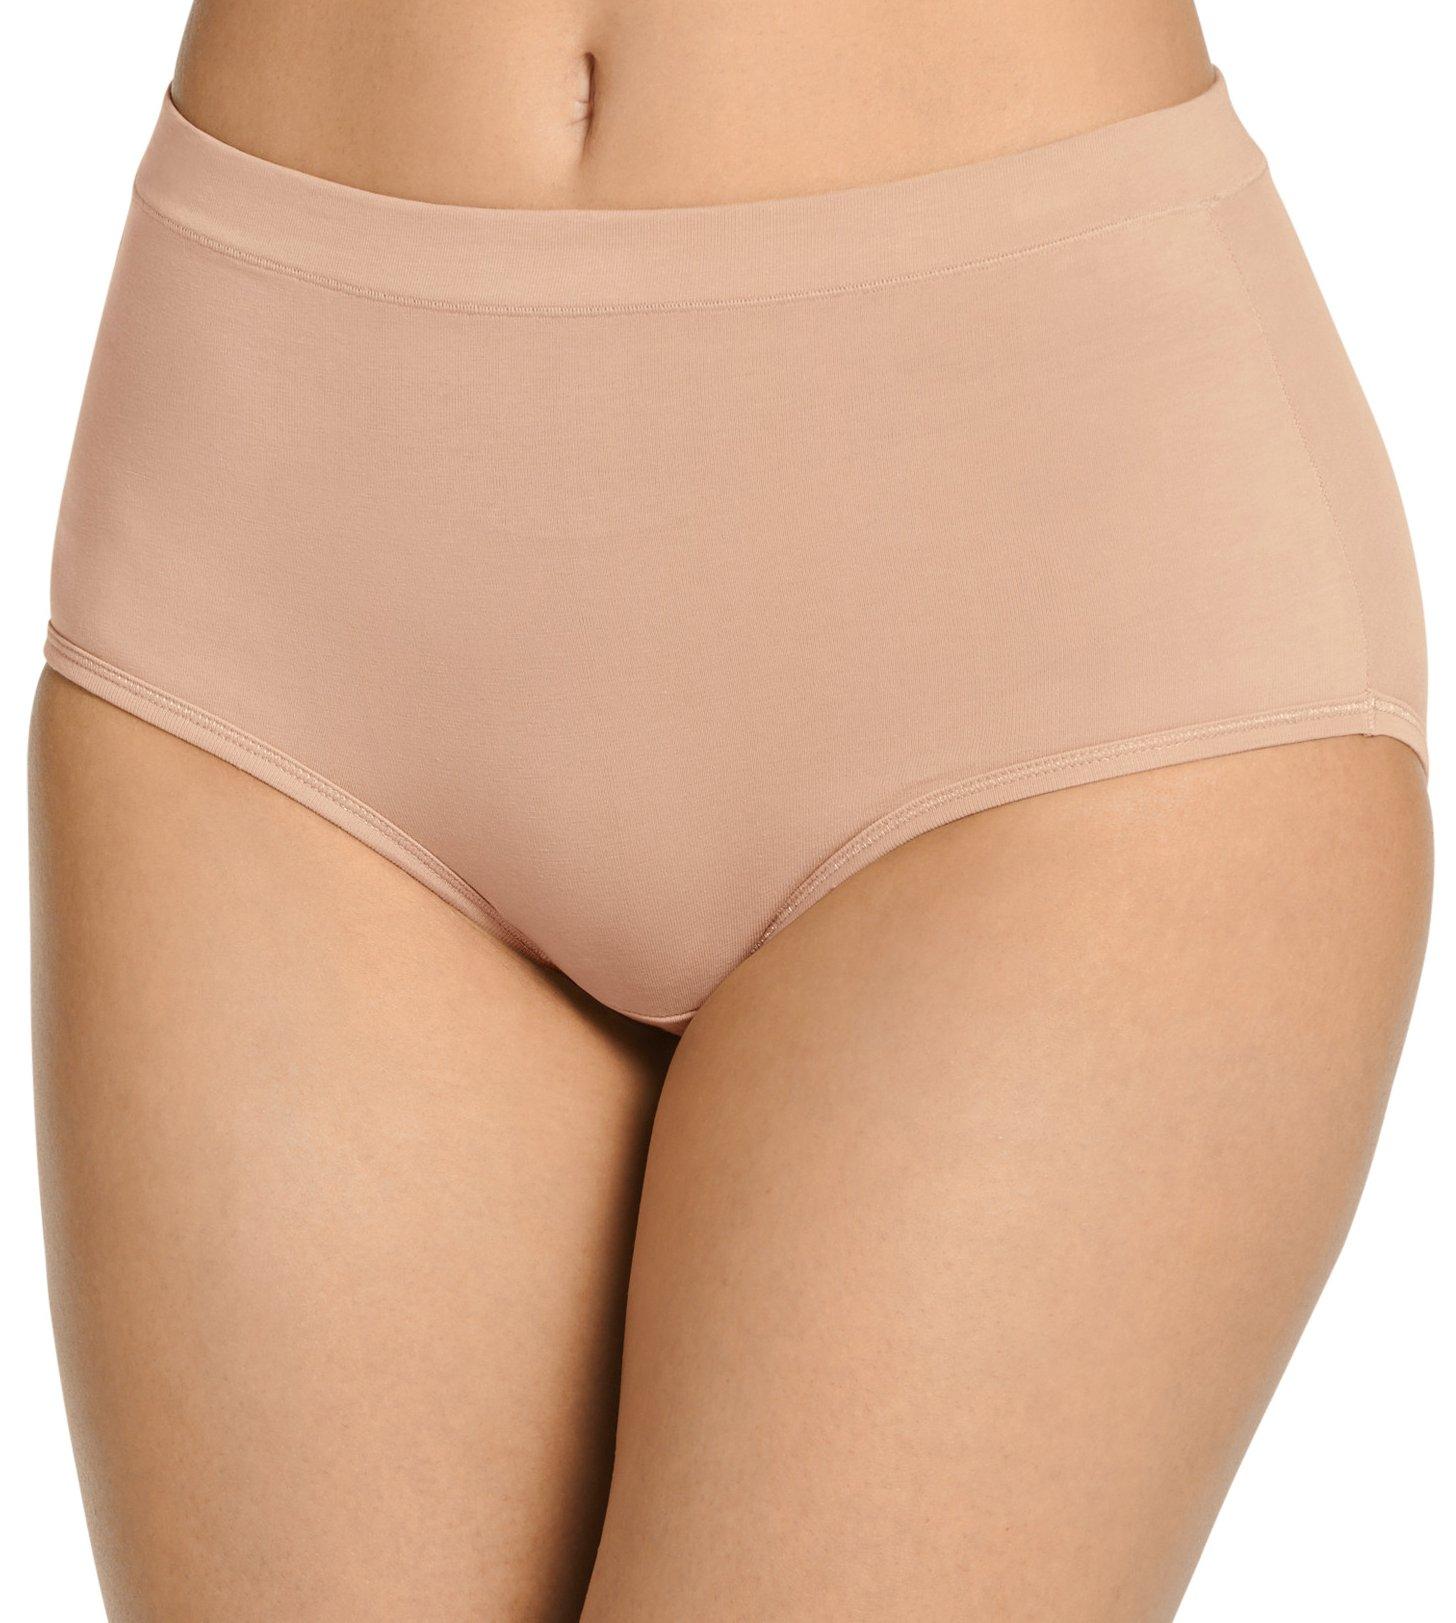 BreWel Porttalent 2023 Waist Ladies Cotton Panties Plus Sizes